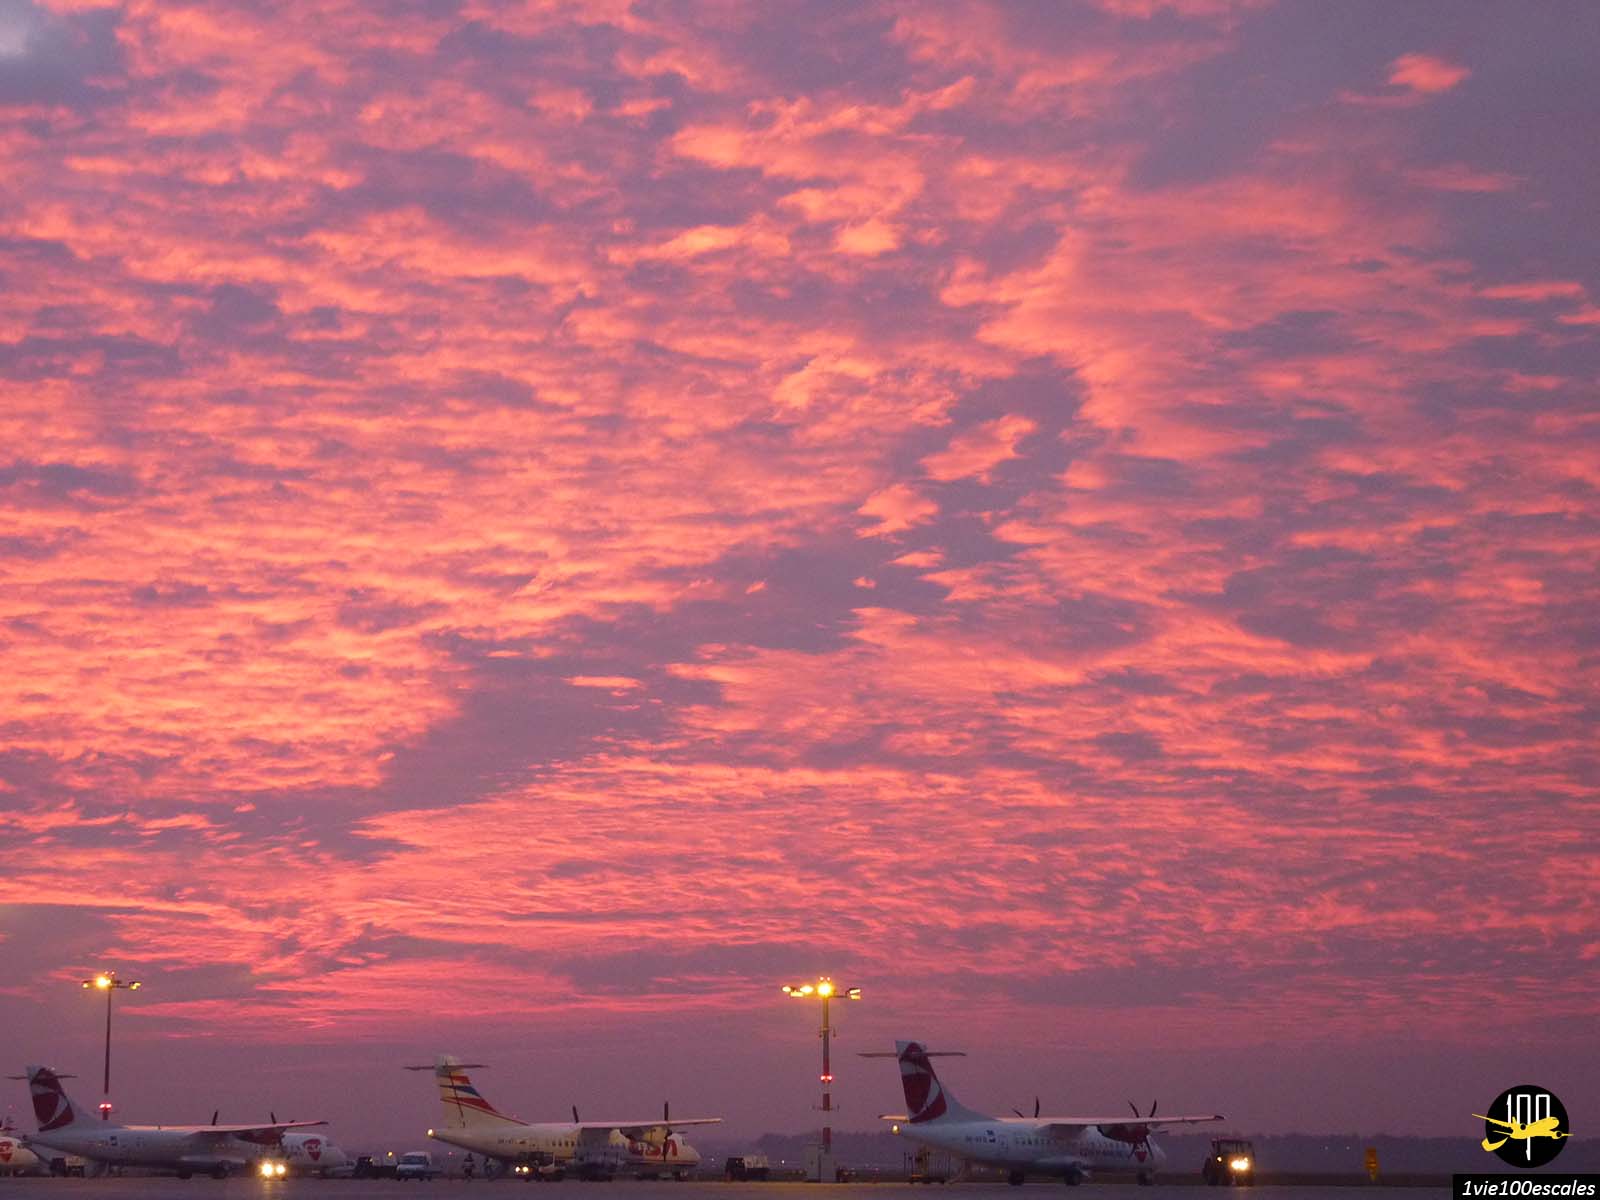 L'Aéroport Václav Havel de Prague avec un ciel en feu au coucher de soleil